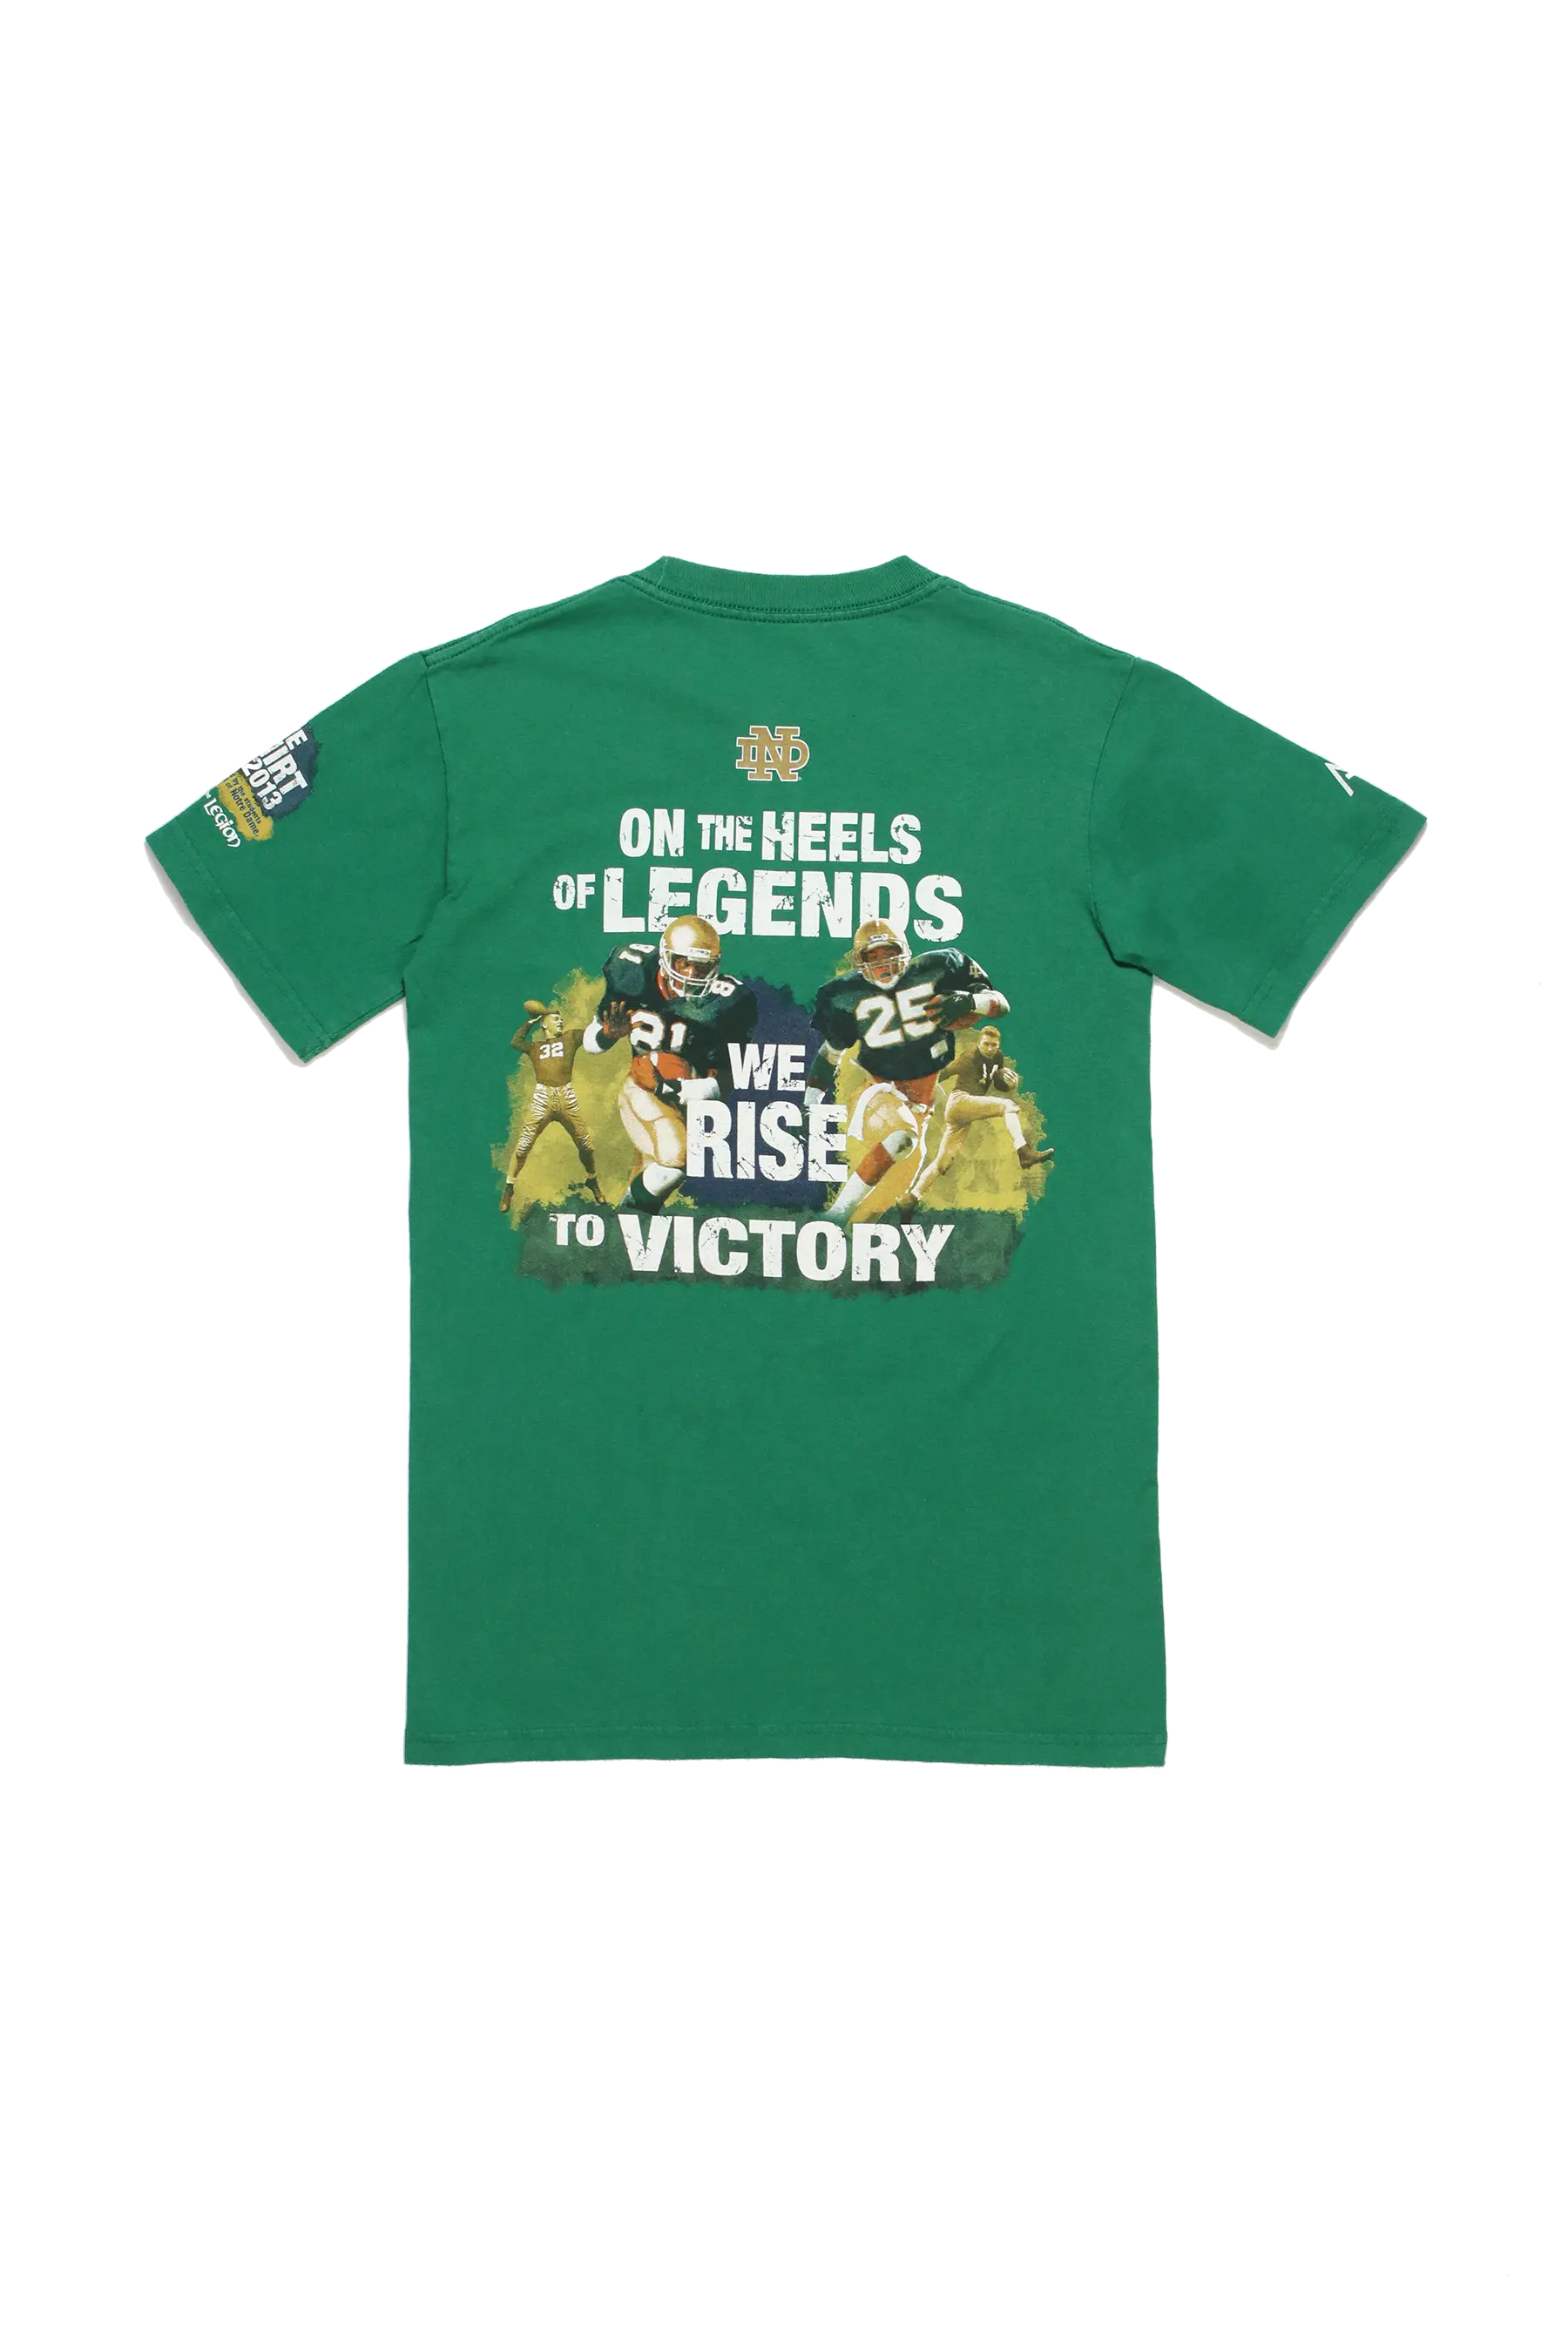 Notre Dame Football T-Shirt